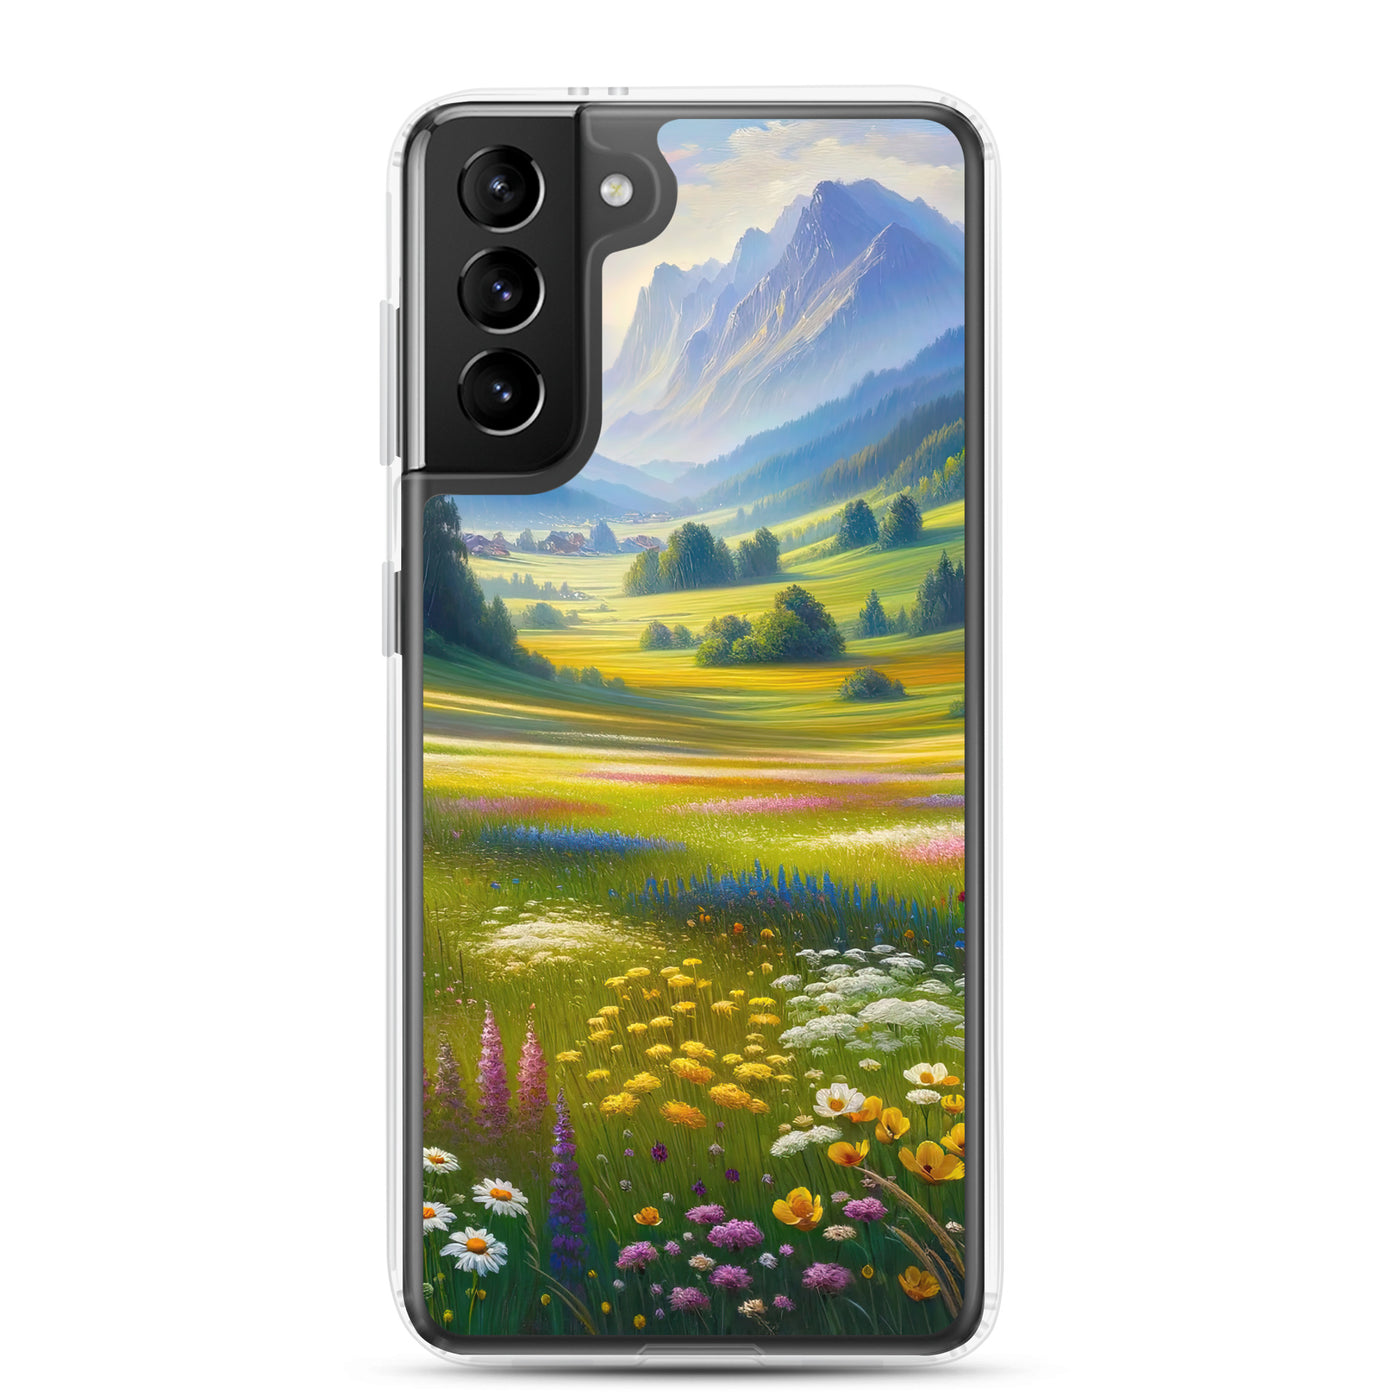 Ölgemälde einer Almwiese, Meer aus Wildblumen in Gelb- und Lilatönen - Samsung Schutzhülle (durchsichtig) berge xxx yyy zzz Samsung Galaxy S21 Plus